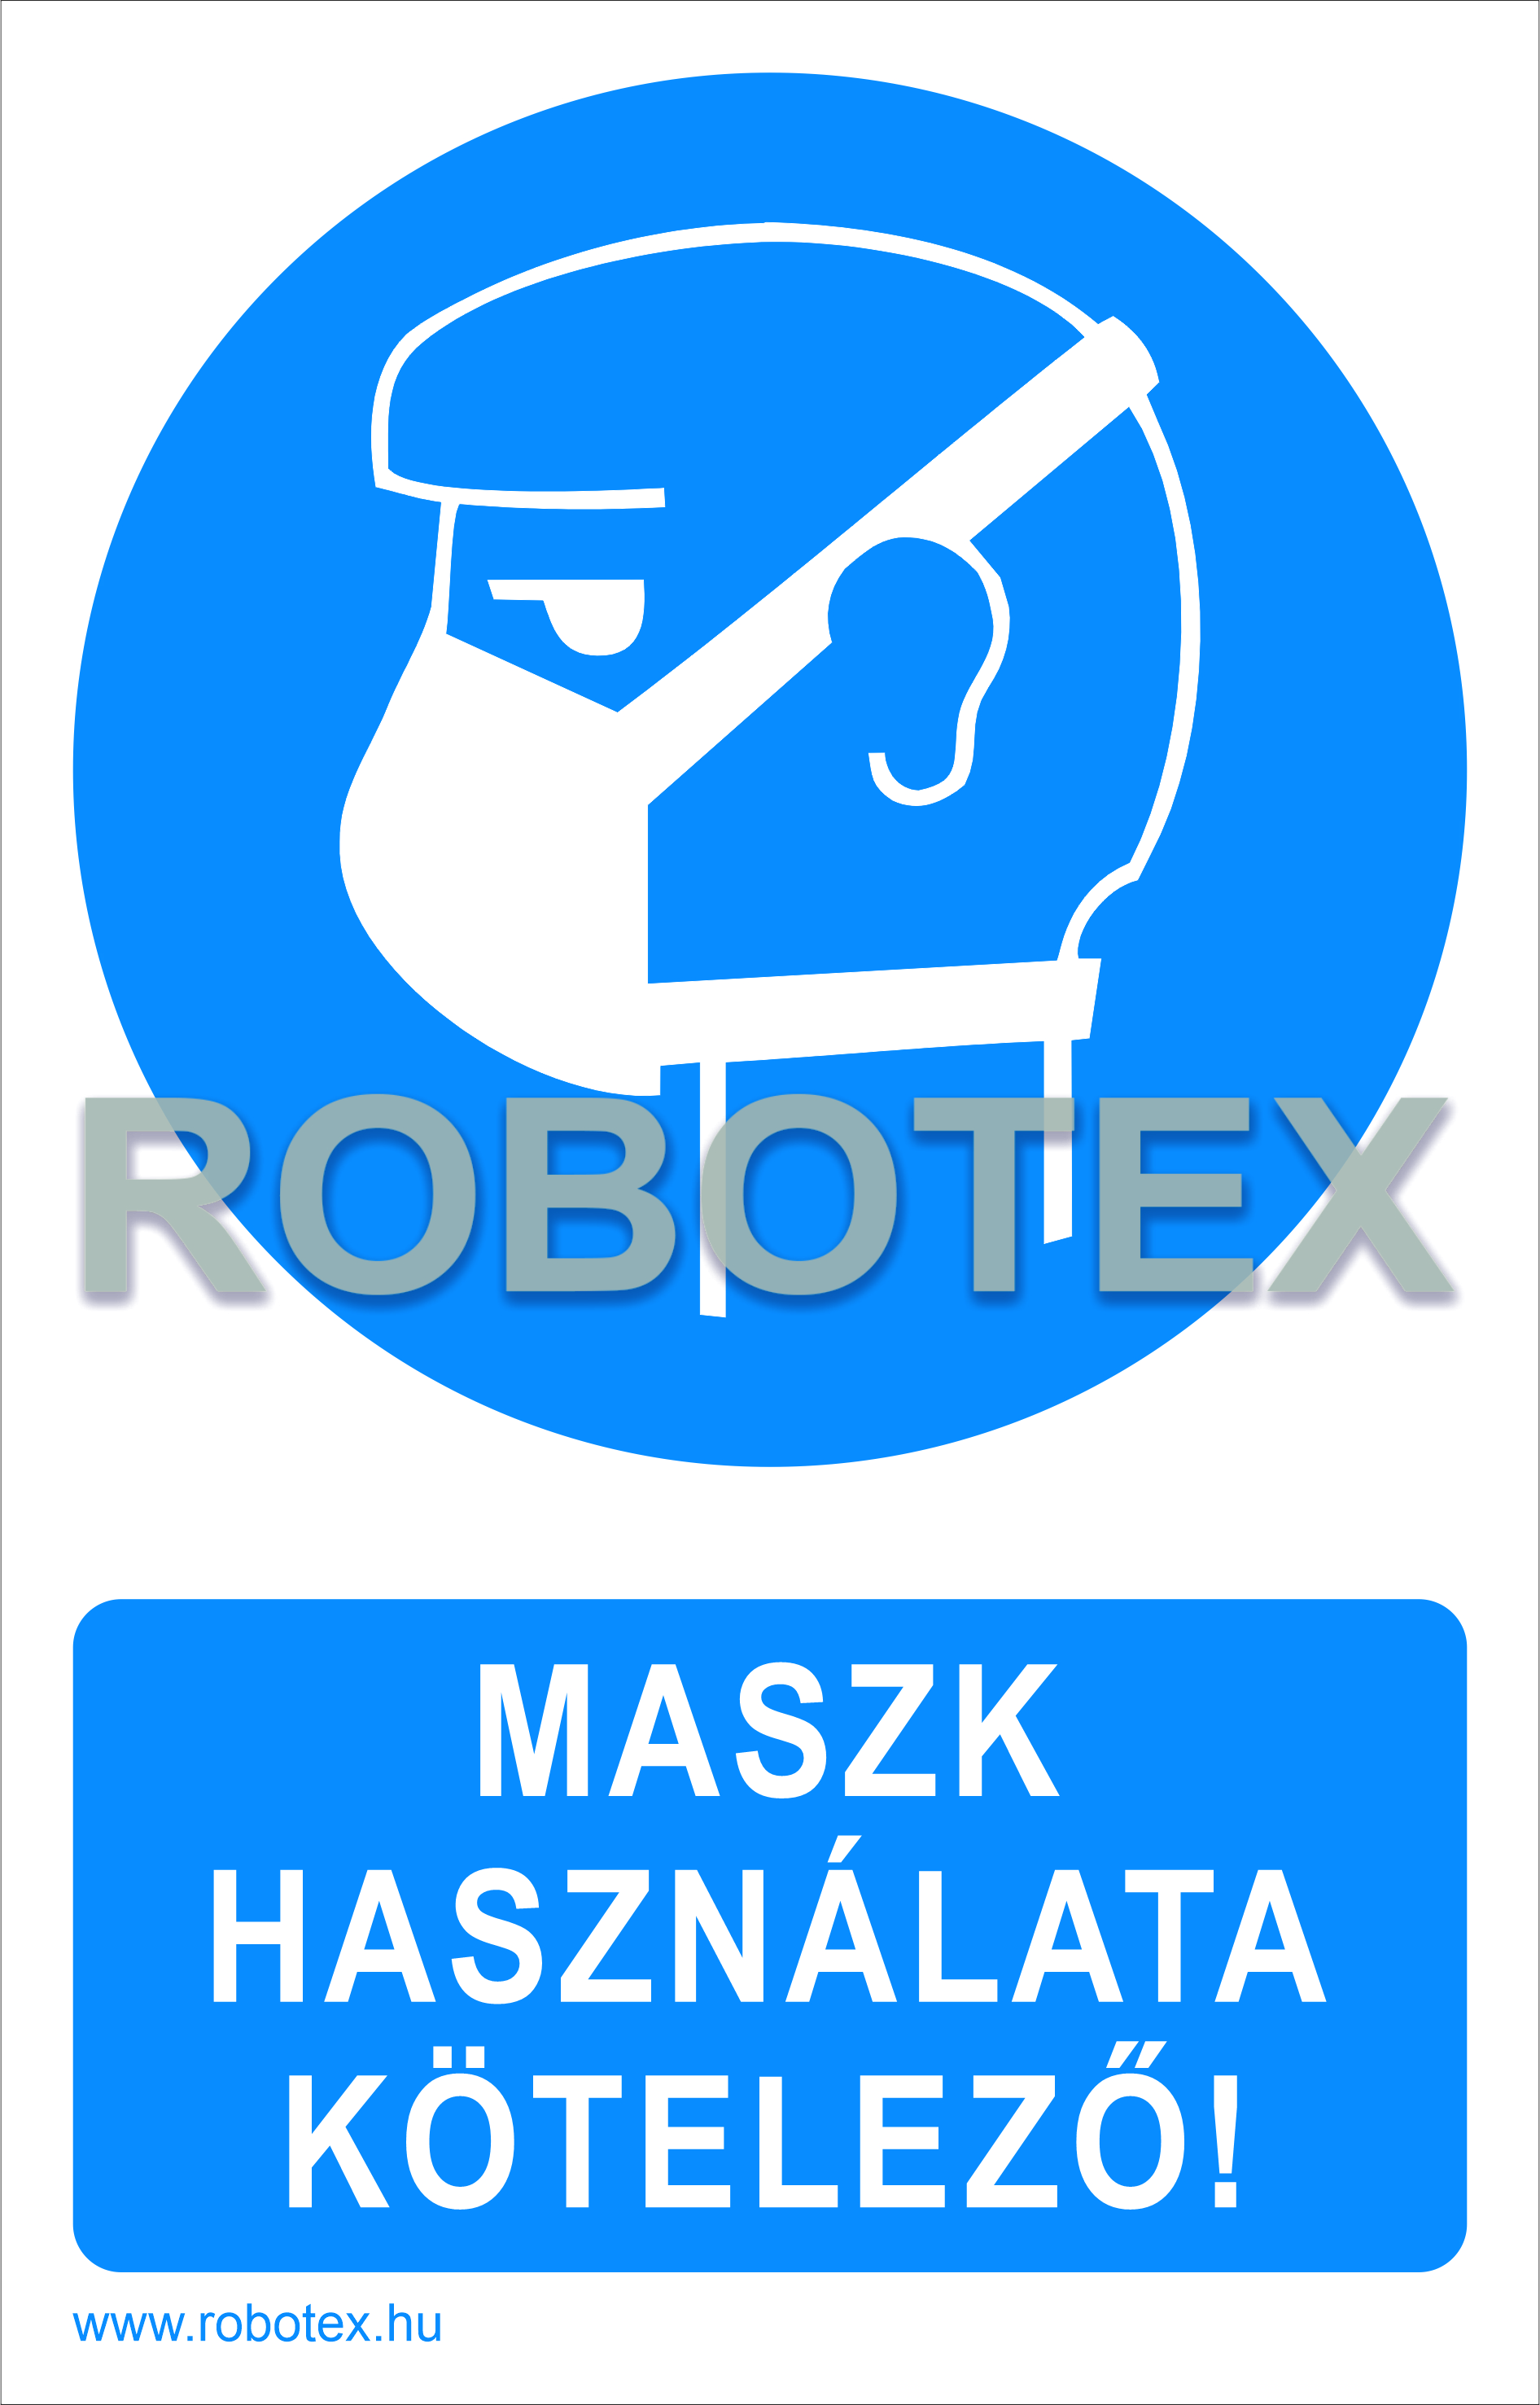 Maszk használata kötelező! - Robotex